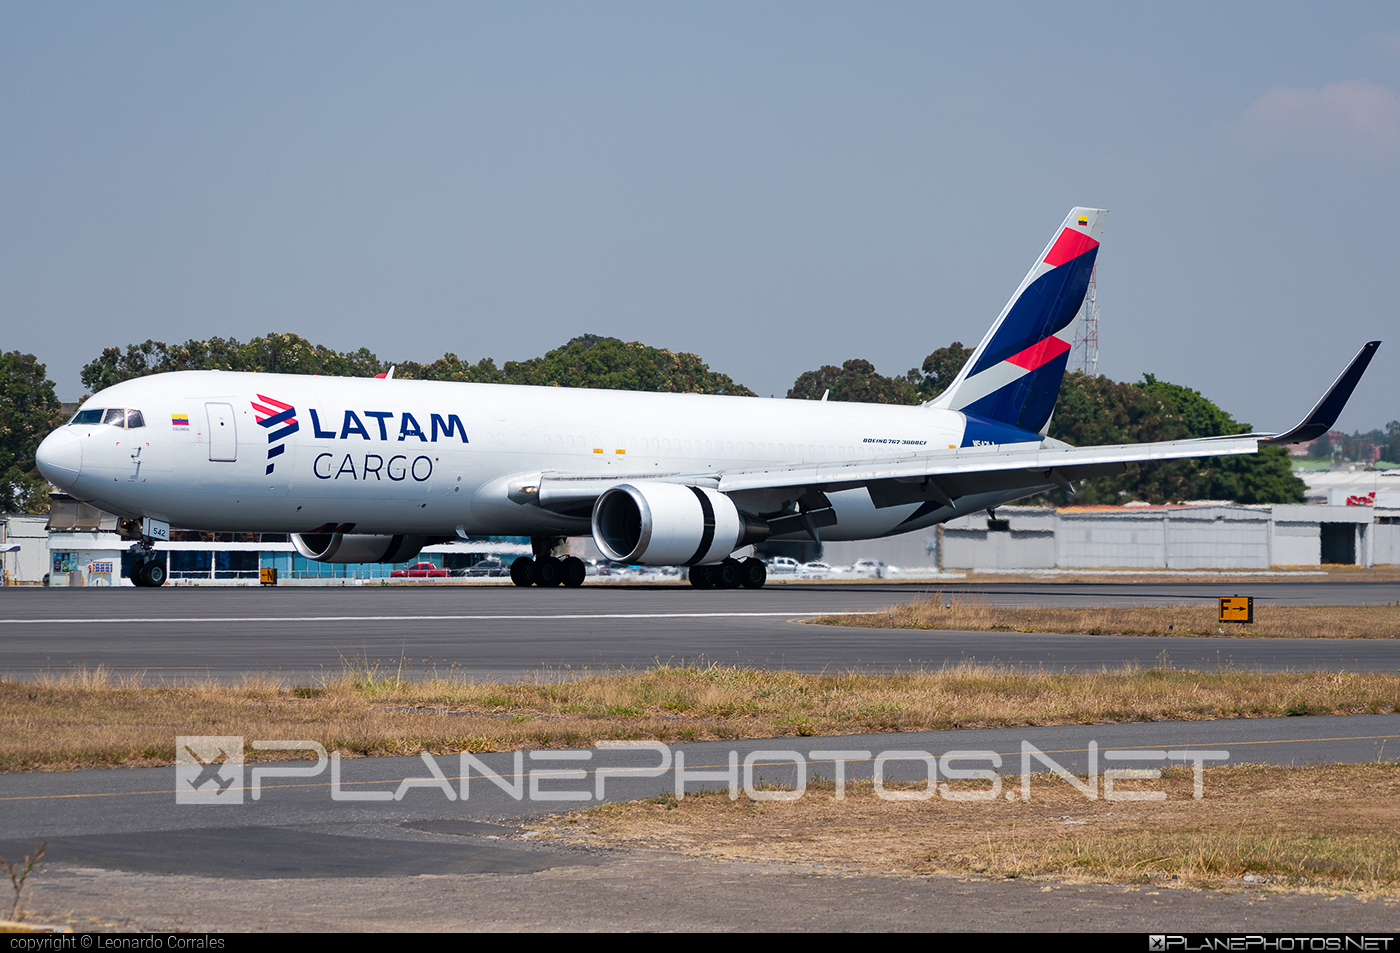 Boeing 767-300BCF - N542LA operated by LATAM Cargo #b767 #b767300 #b767300bcf #b767bcf #boeing #boeing767 #boeingConvertedFreighter #latam #latamCargo